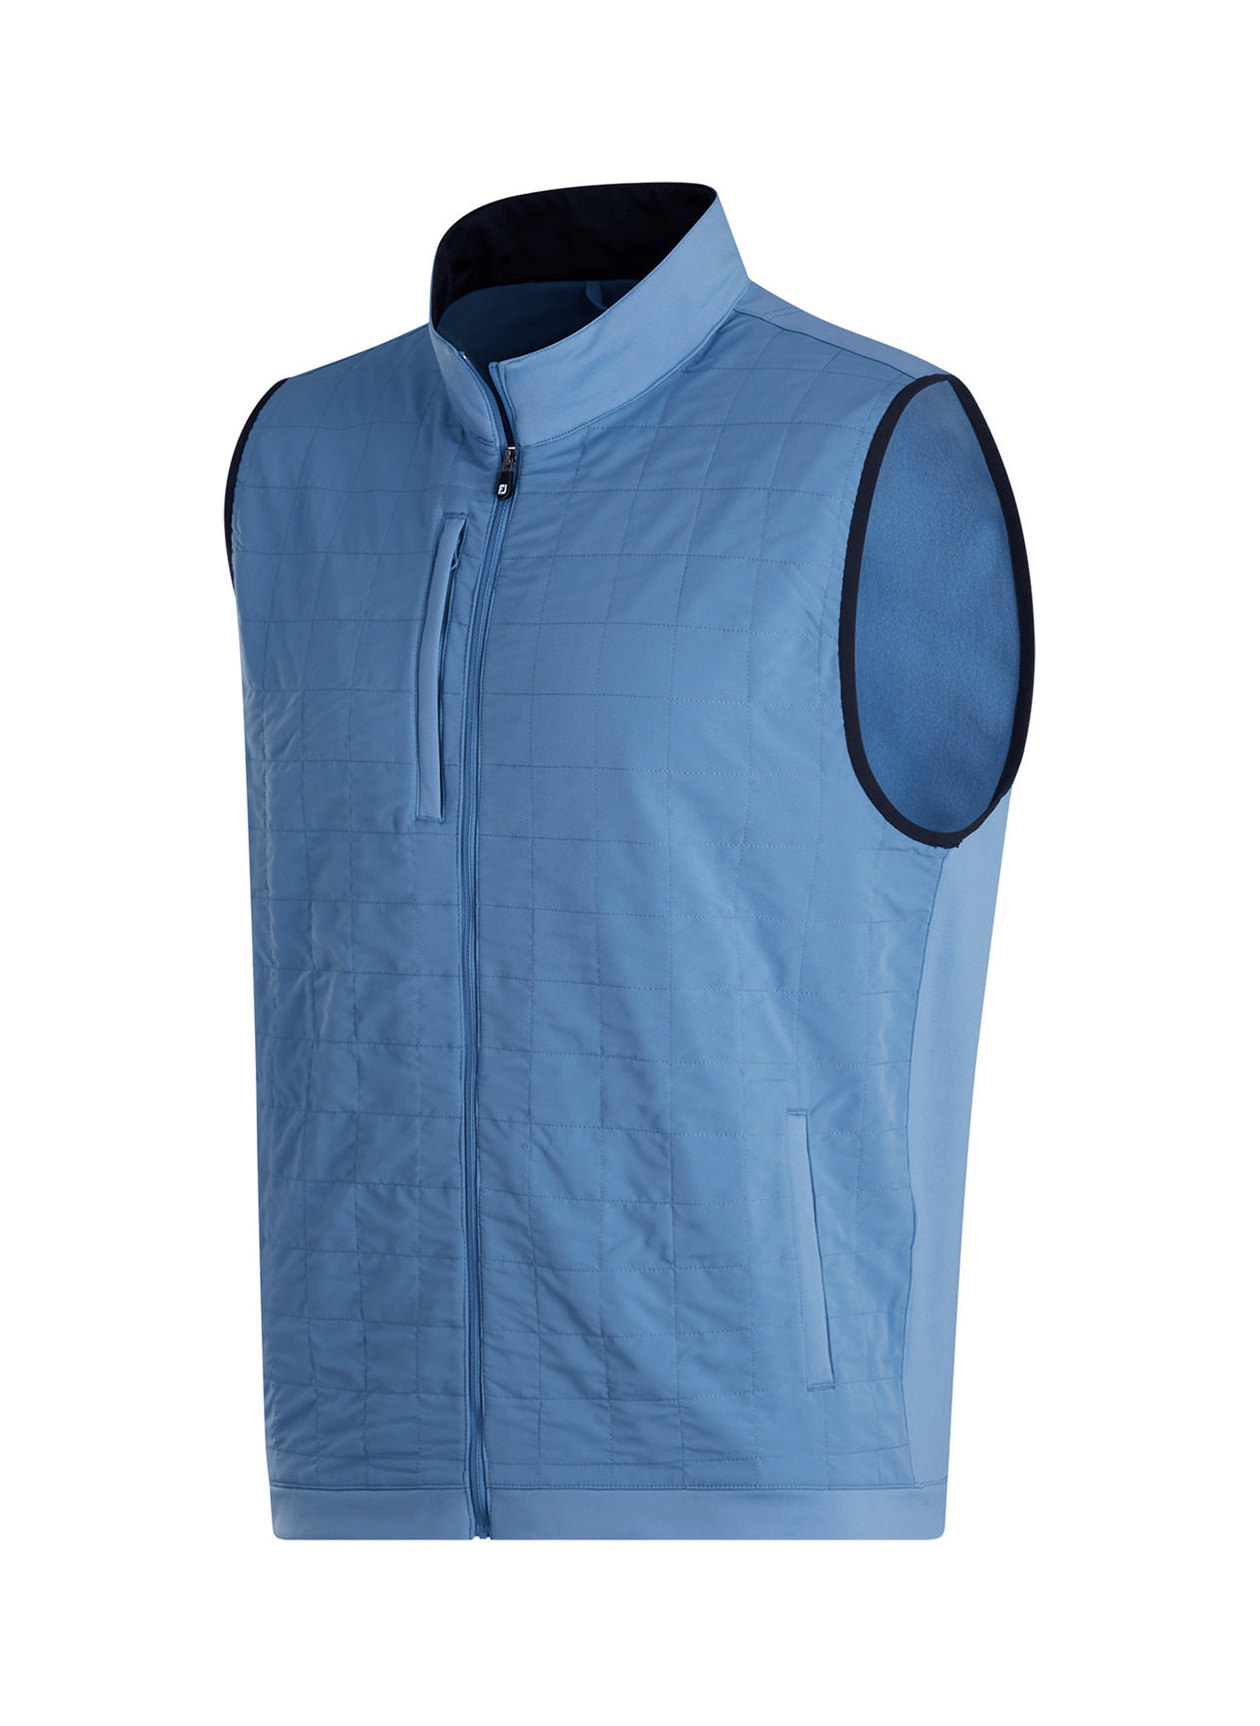 FootJoy Men's Indigo Hybrid Vest